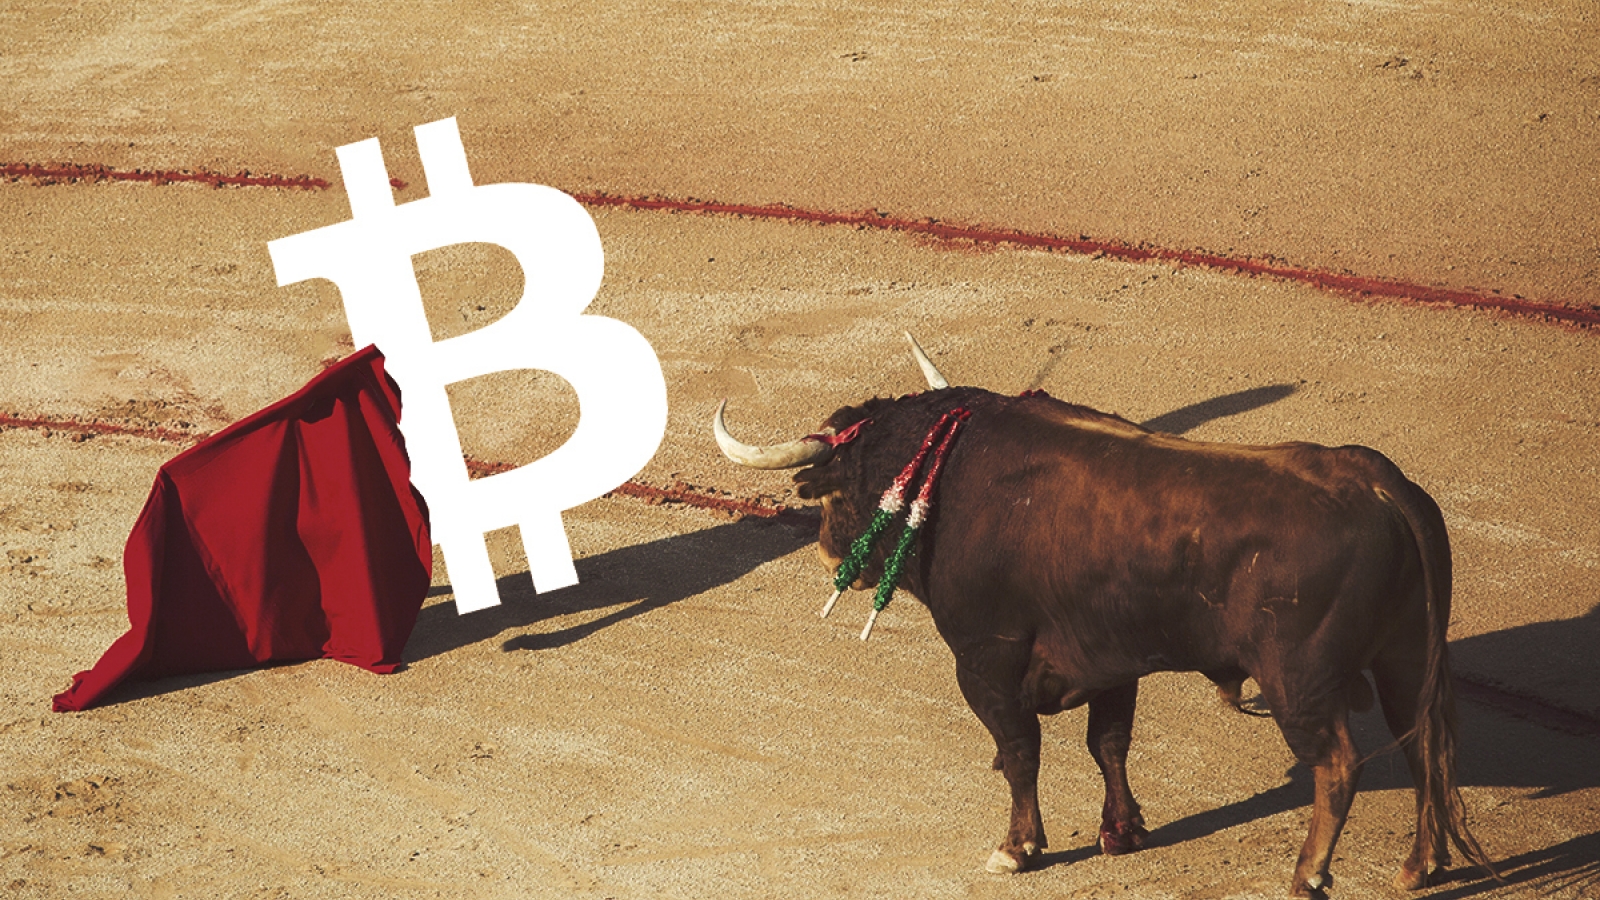 Bull run Bitcoin 2020